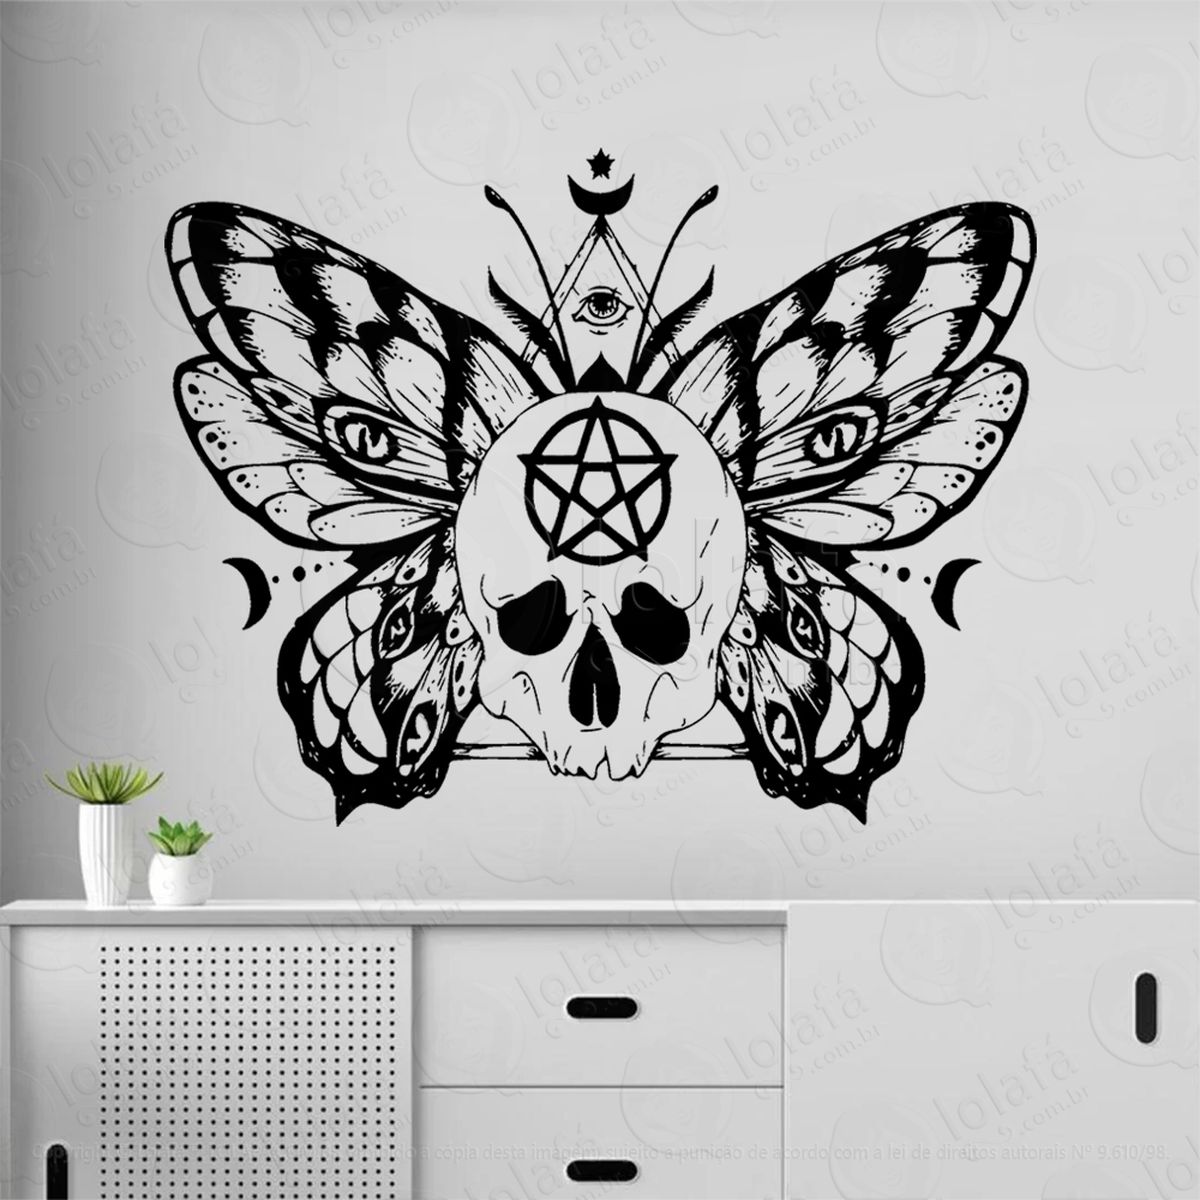 borboleta mágica da wicca adesivo de parede decorativo para casa, sala, quarto, vidro e altar ocultista - mod:196